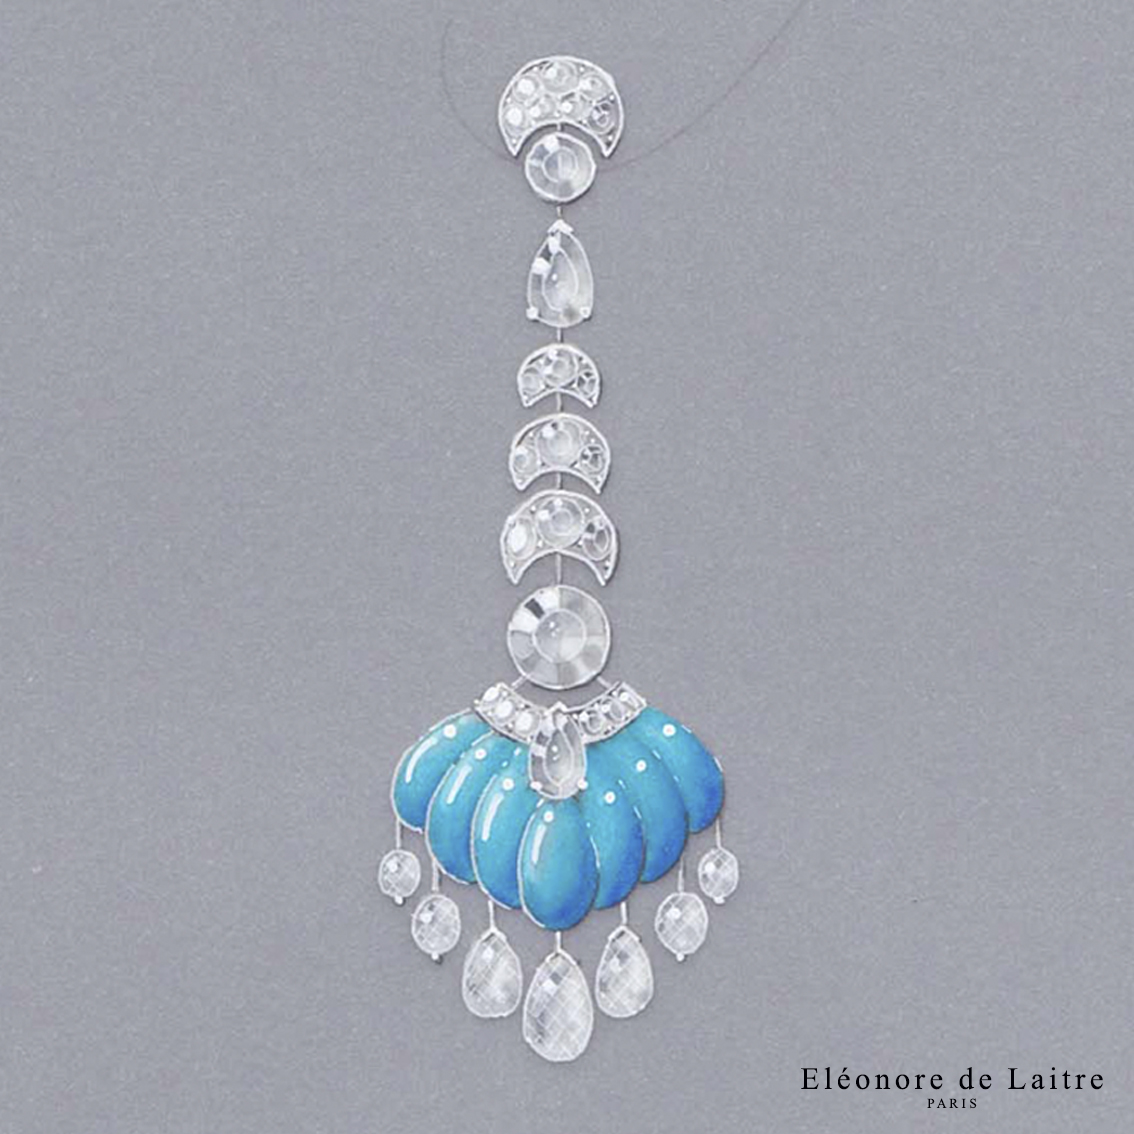 Eléonore de Laitre - Création gouachée - MO Clair de Lune - Diamants, turquoise, or blanc.